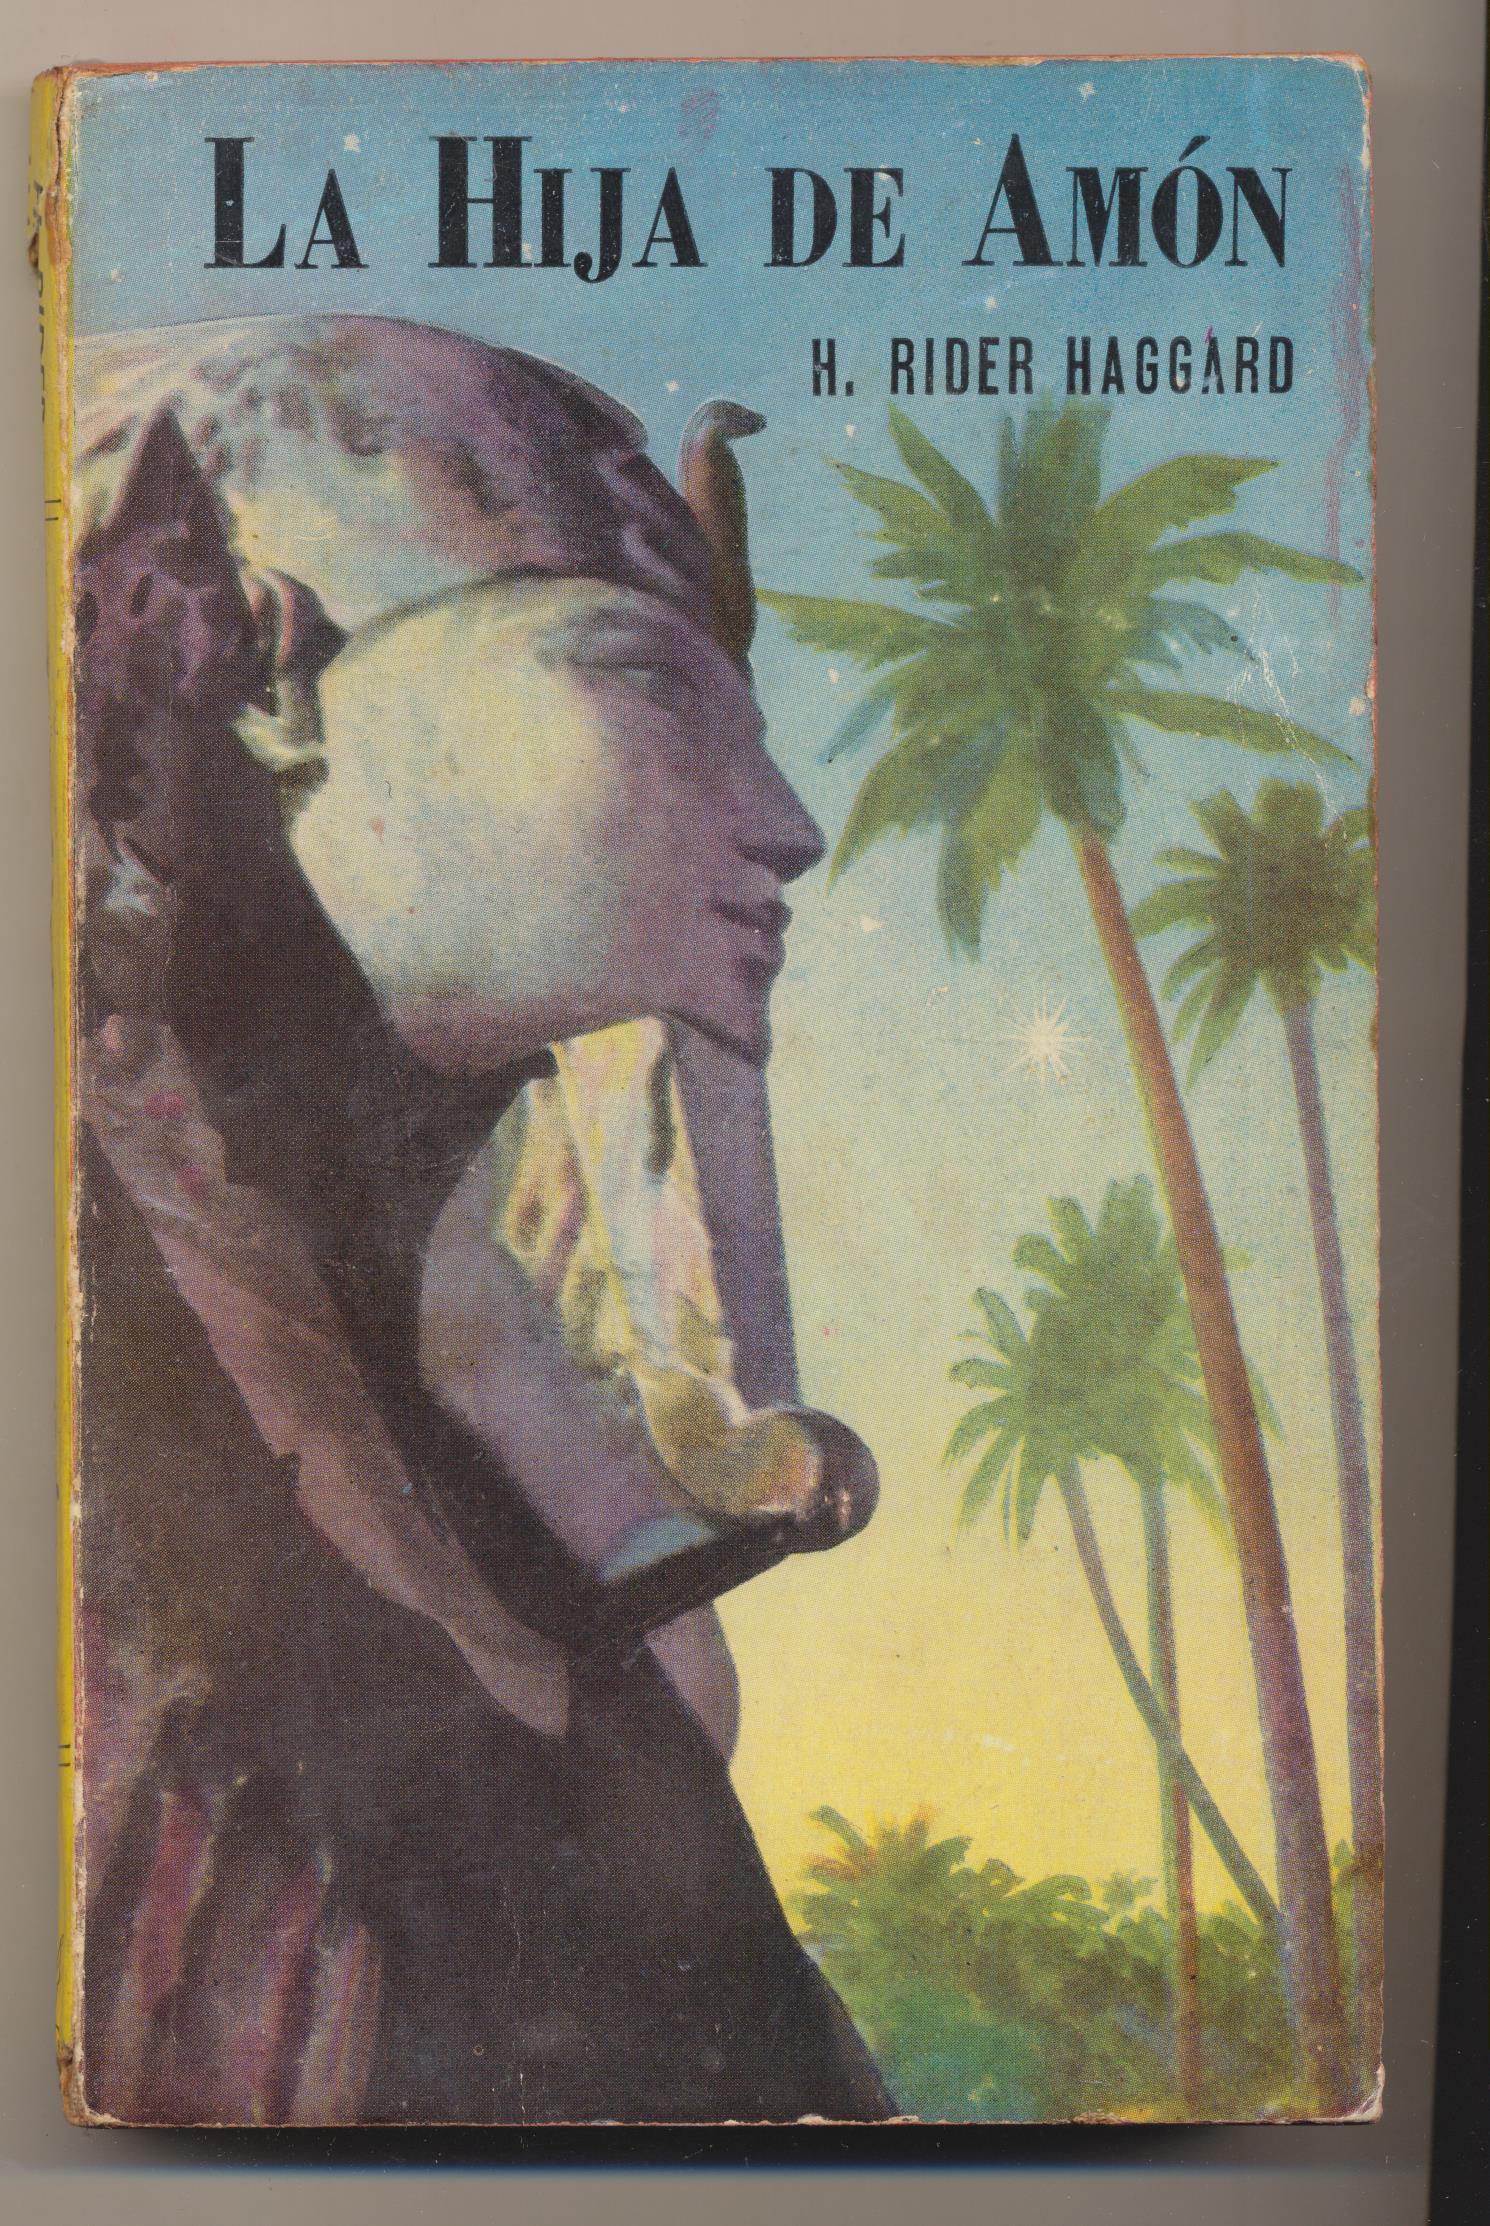 Colección Centauro nº 11. La hija de Amón por H. Rider Haggard. 2ª Edición Acme-Buenos Aires 1947